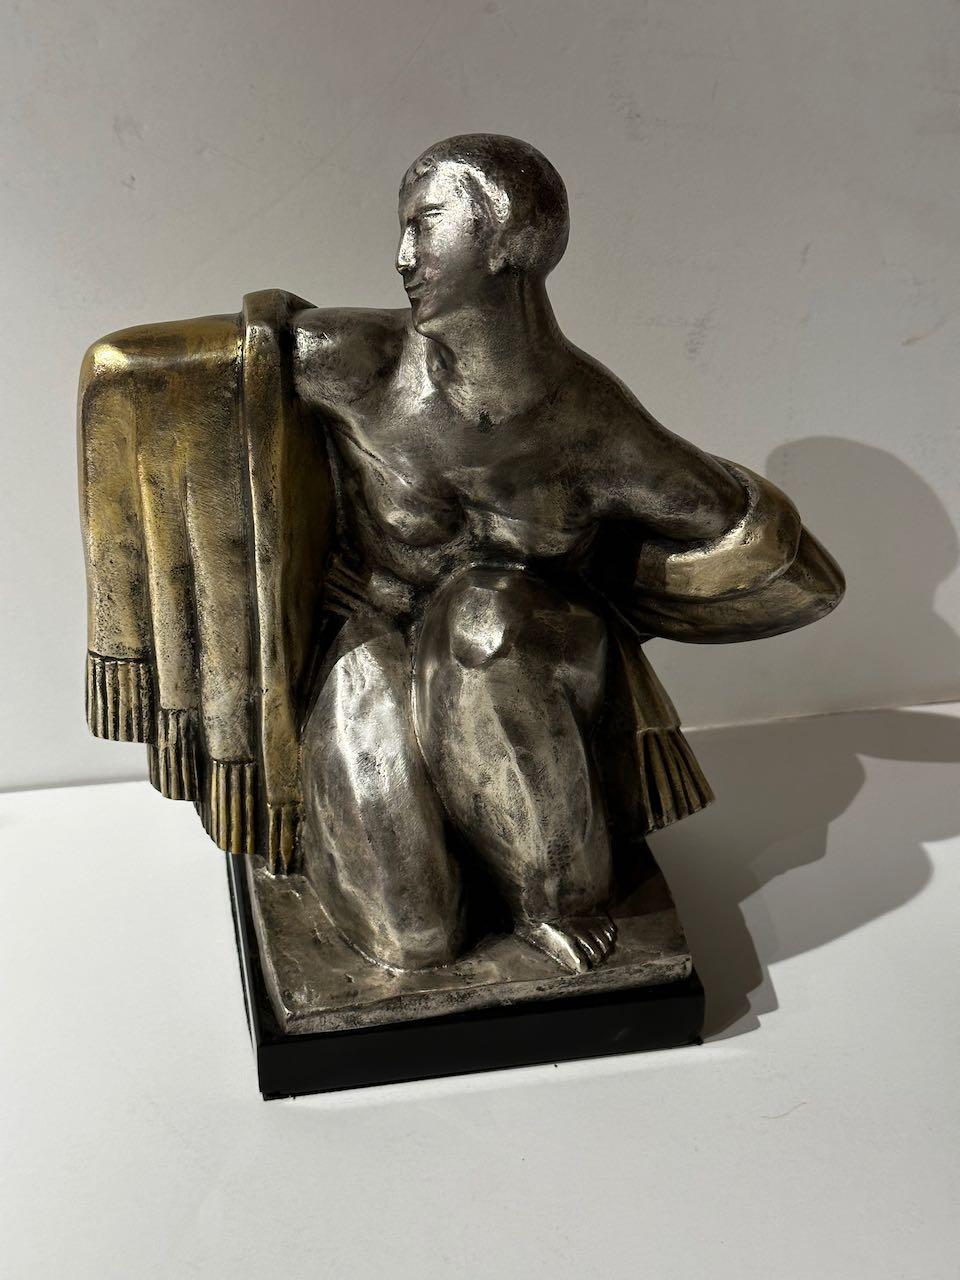 Jan Cannel, sculpteur belge Bronze cubiste Art déco. Cette version en bronze est extrêmement rare, cette sculpture apparaît parfois sur le marché en terre cuite ou en plâtre. Sculpture en bronze argenté. Signé sur le bronze. Avec une base en marbre